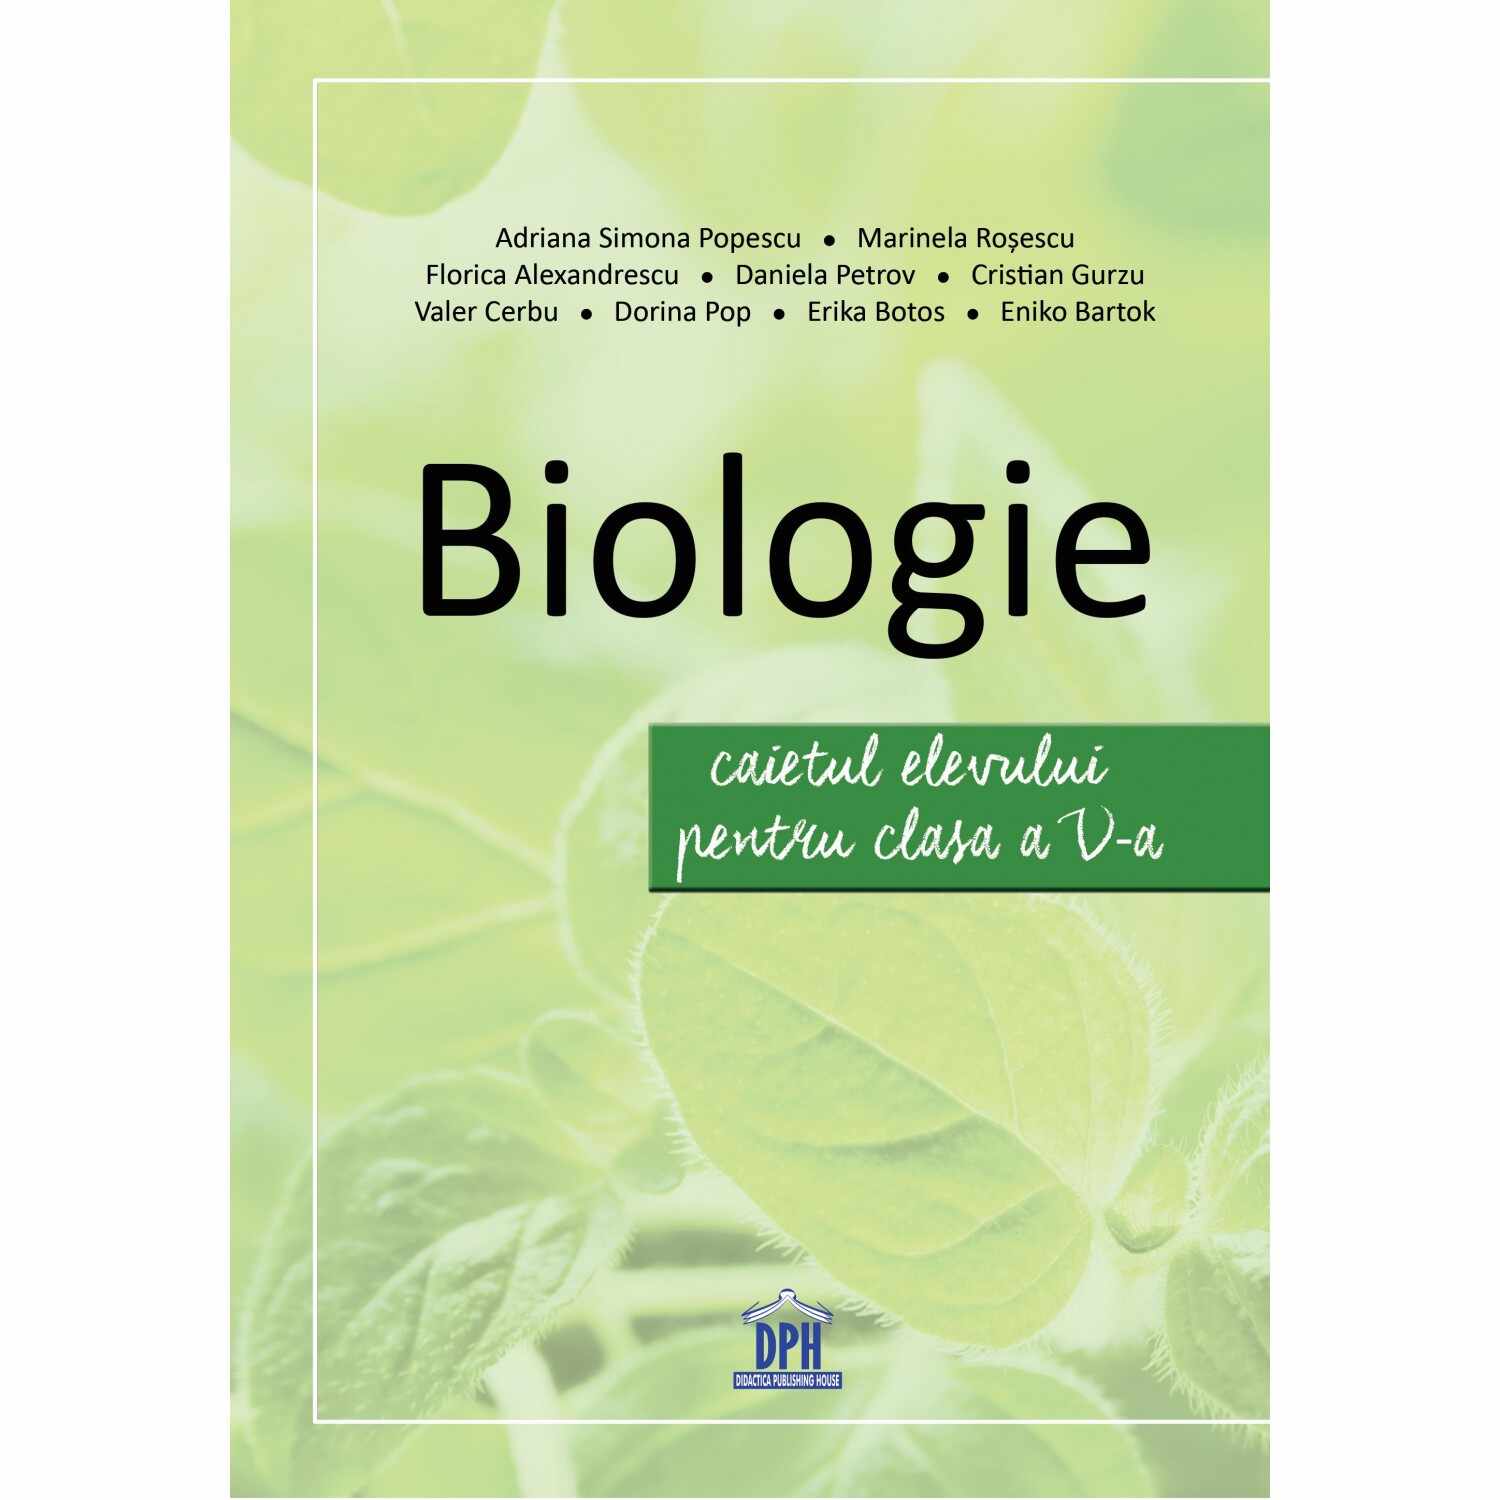 Biologie - Caietul elevului pentru clasa a V-a | Adriana Simona Popescu, Marinela Rosescu, Florica Alexandrescu, Daniela Petrov